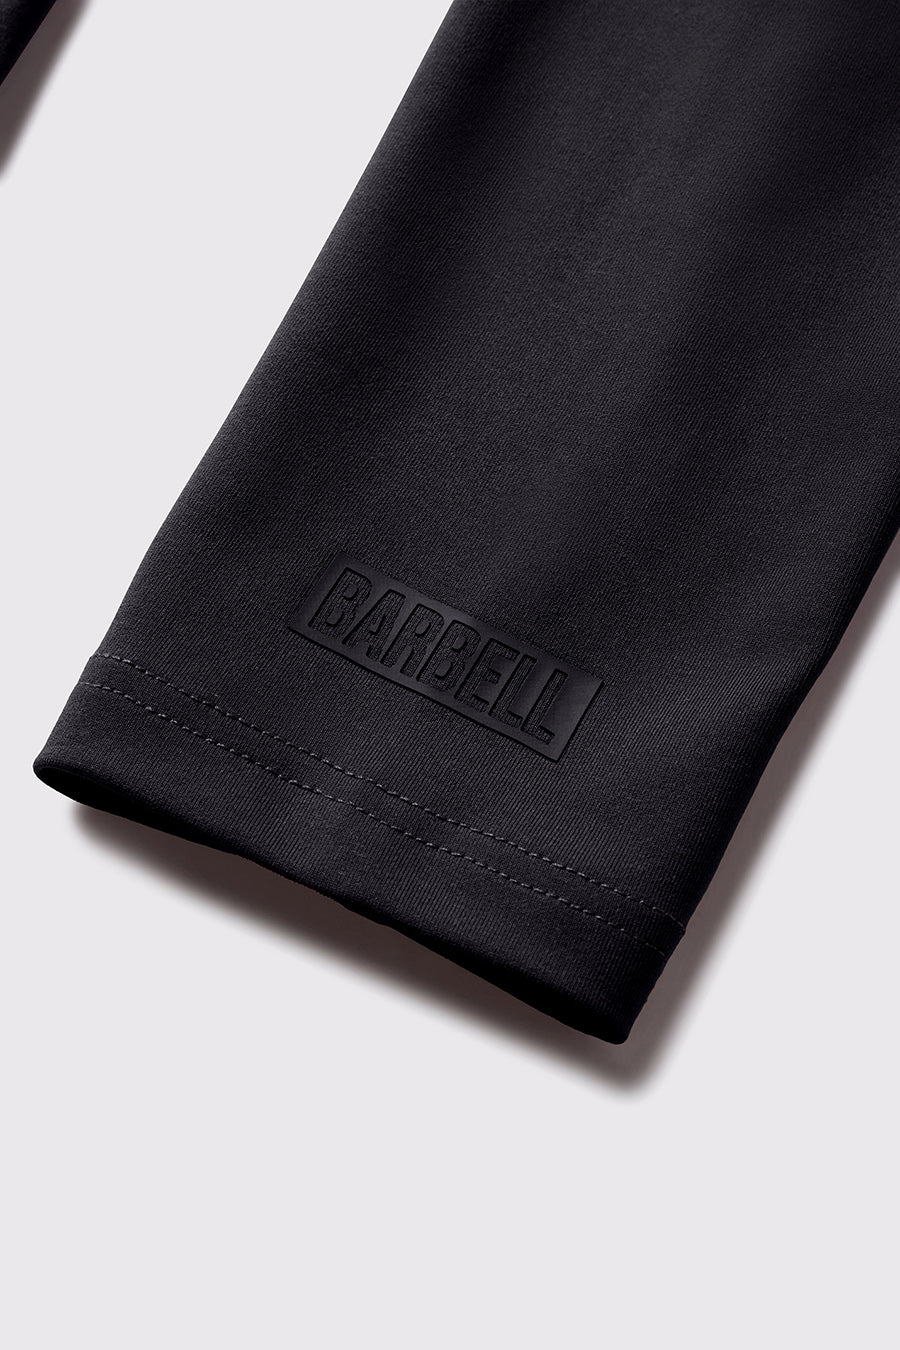 Stealth Hoodie Full Zip - Black - photo from sleeve detail #color_black